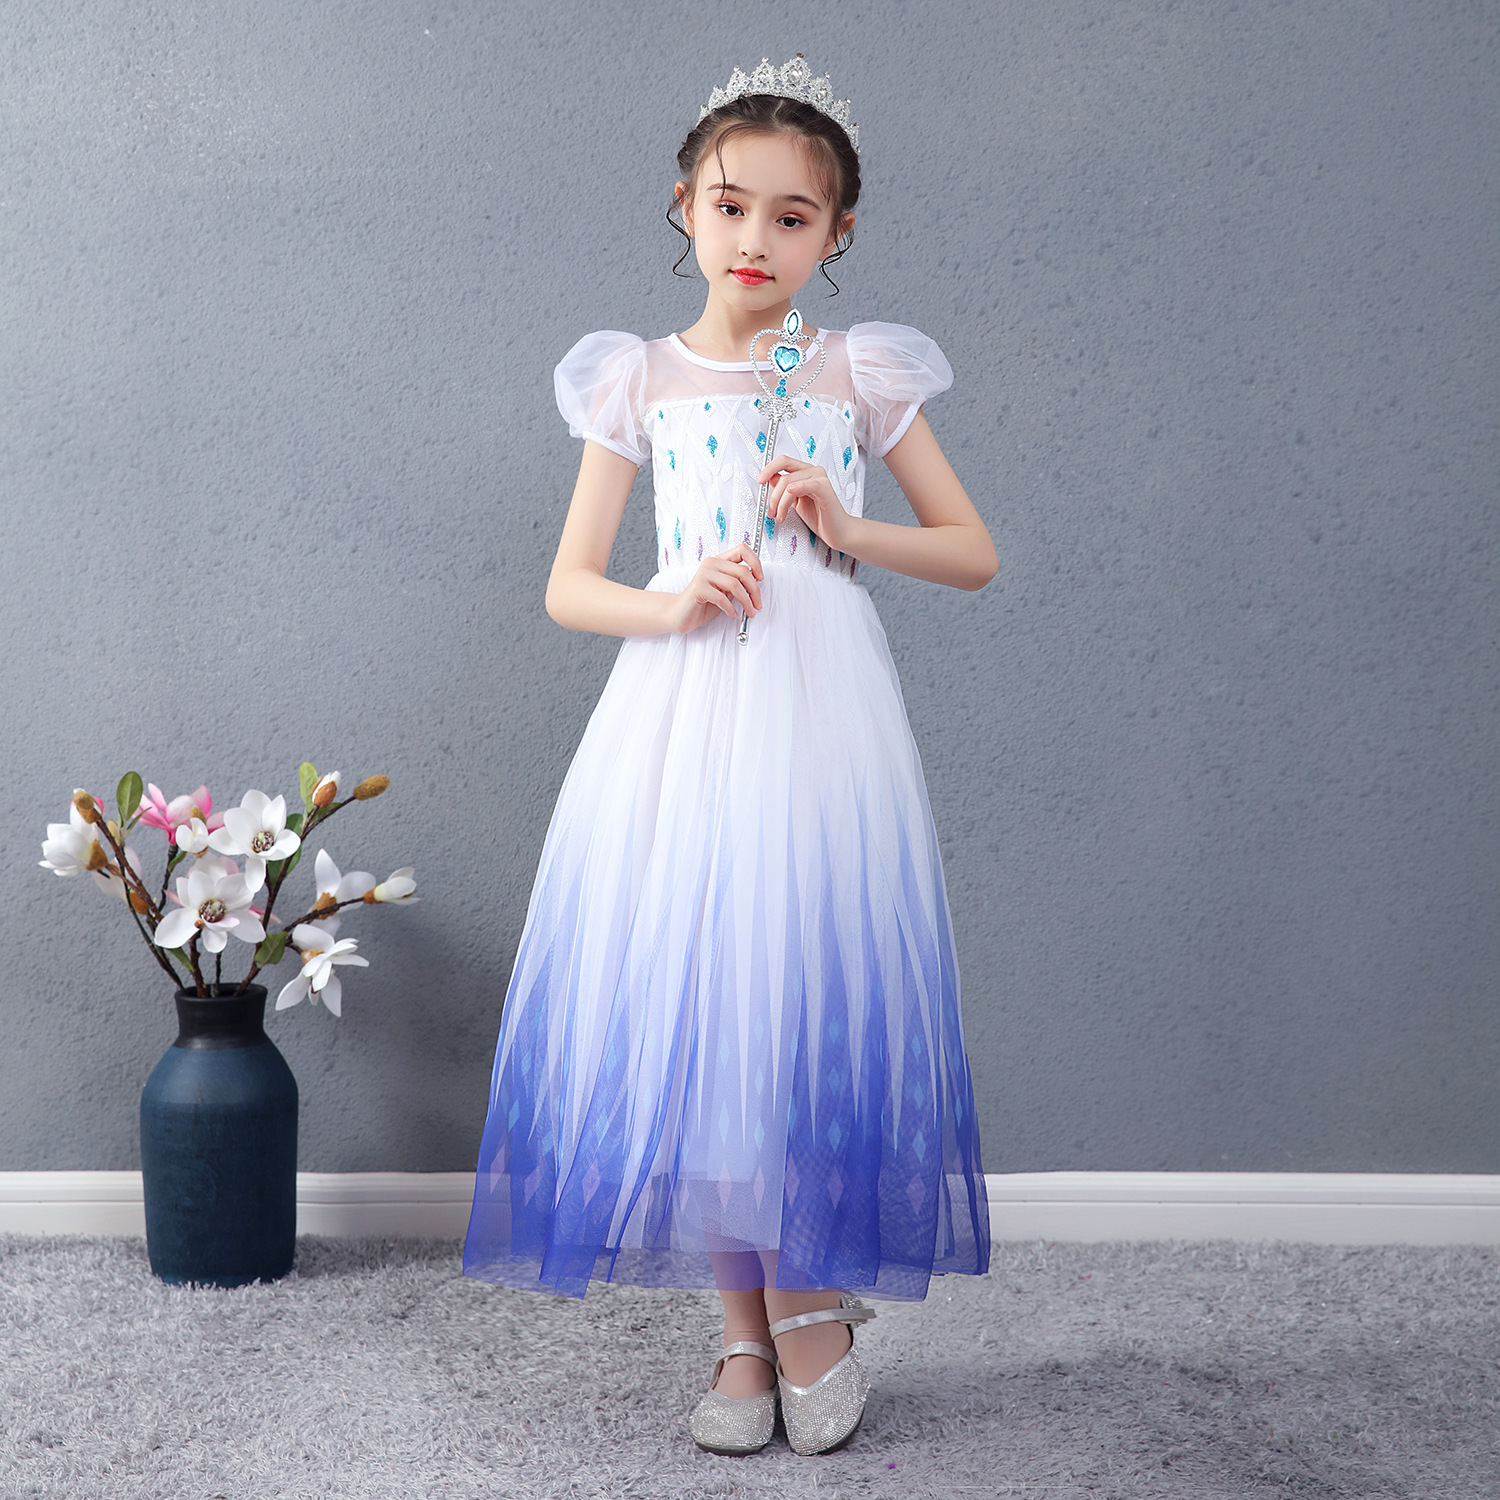 Váy Nữ hoàng Elsa Cosplay Elsa Anna Girls - Mẫu mới nhất 2020 (Frozen 2) Cho bé gái từ 4 -12 tuổi